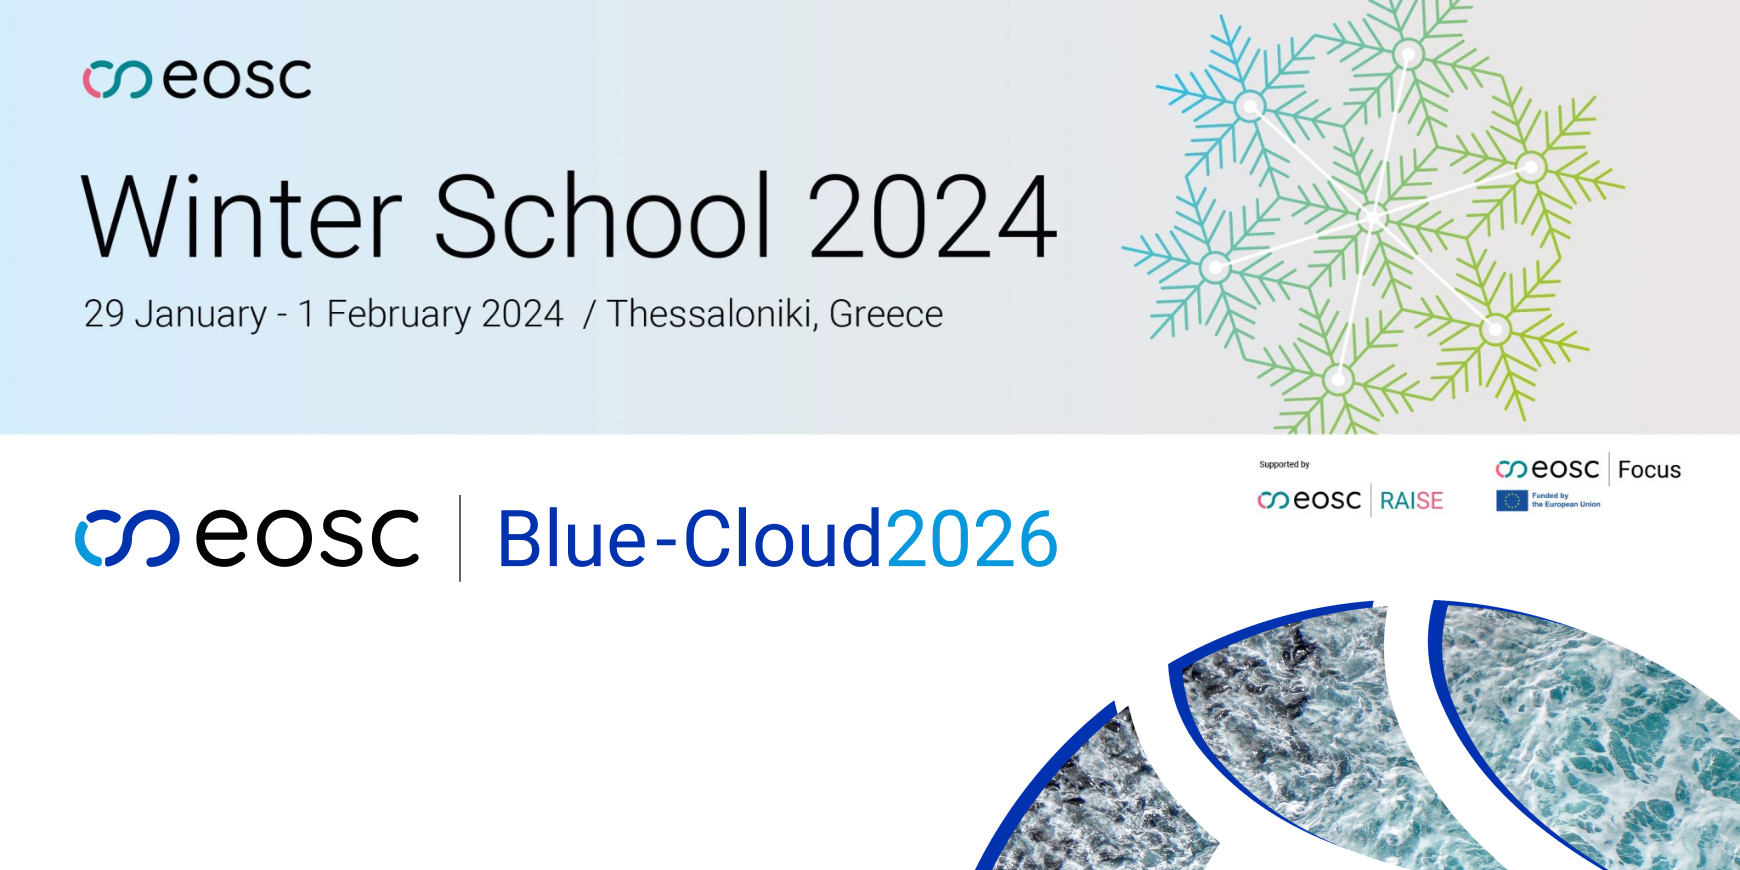 Blue-Cloud2026 at EOSC Winterschool